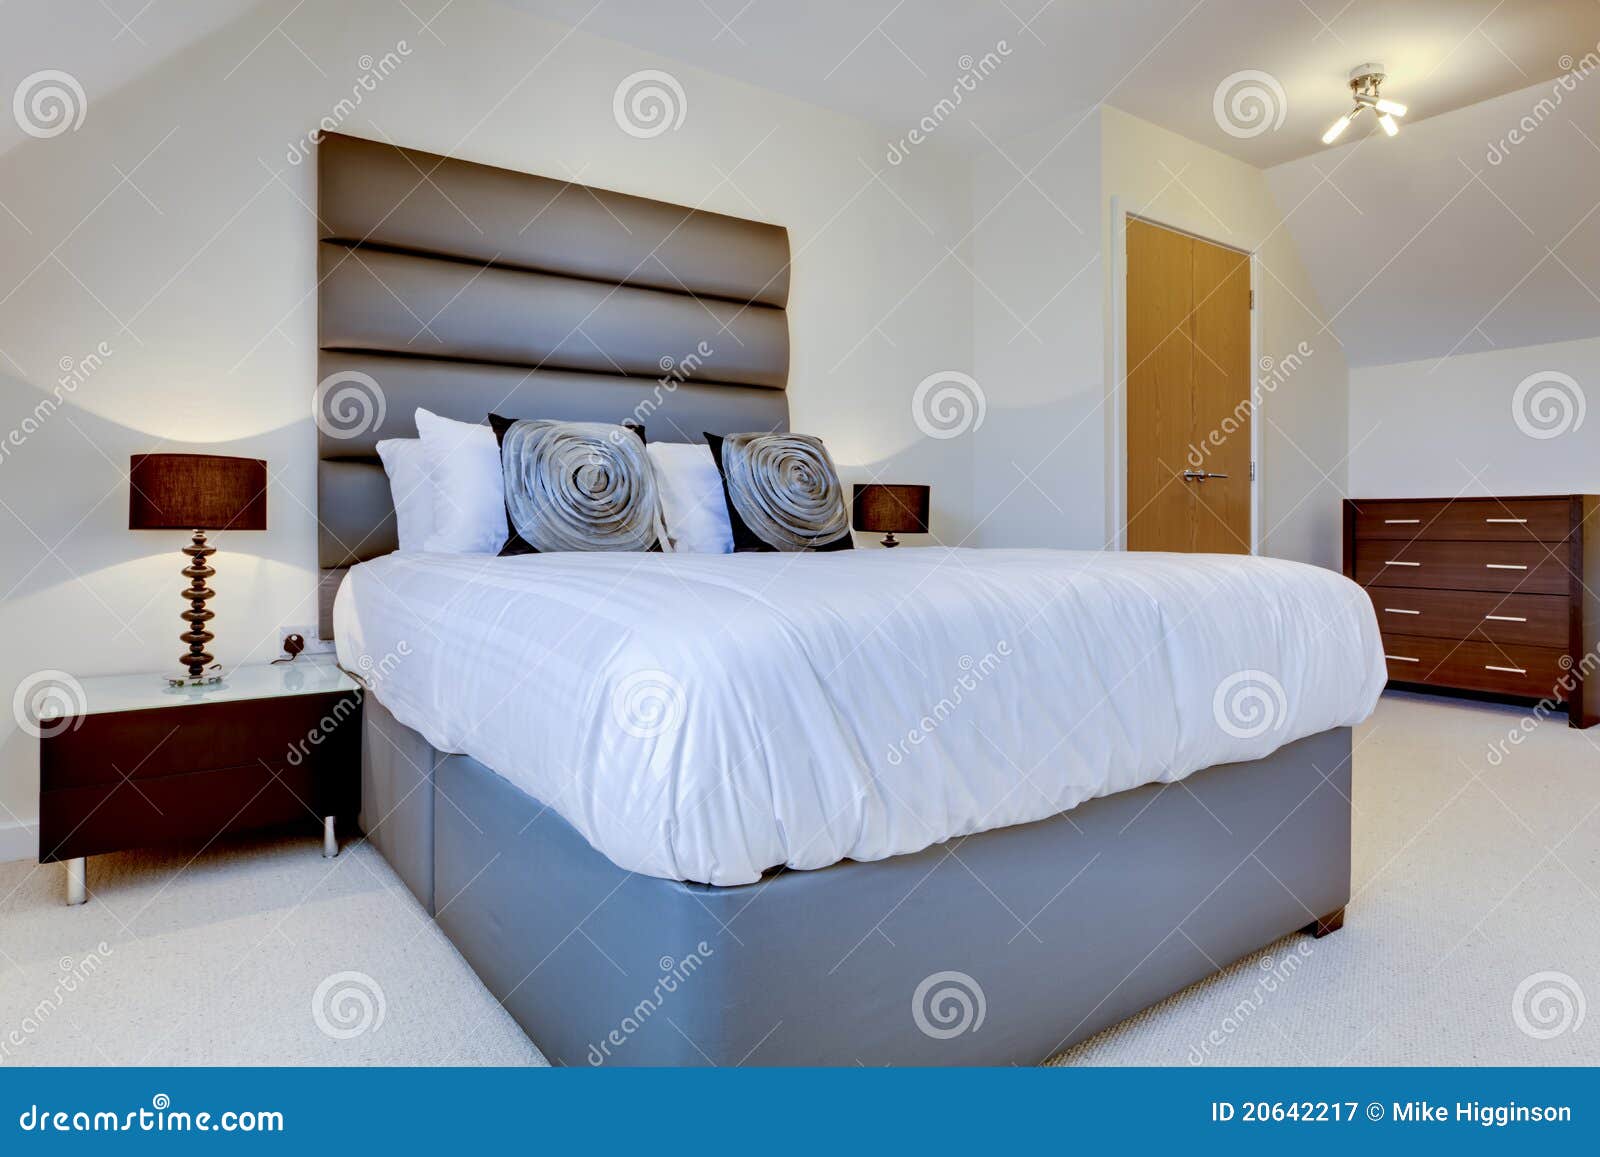 Dormitorio moderno de lujo imagen de archivo. Imagen de nuevo - 20642217